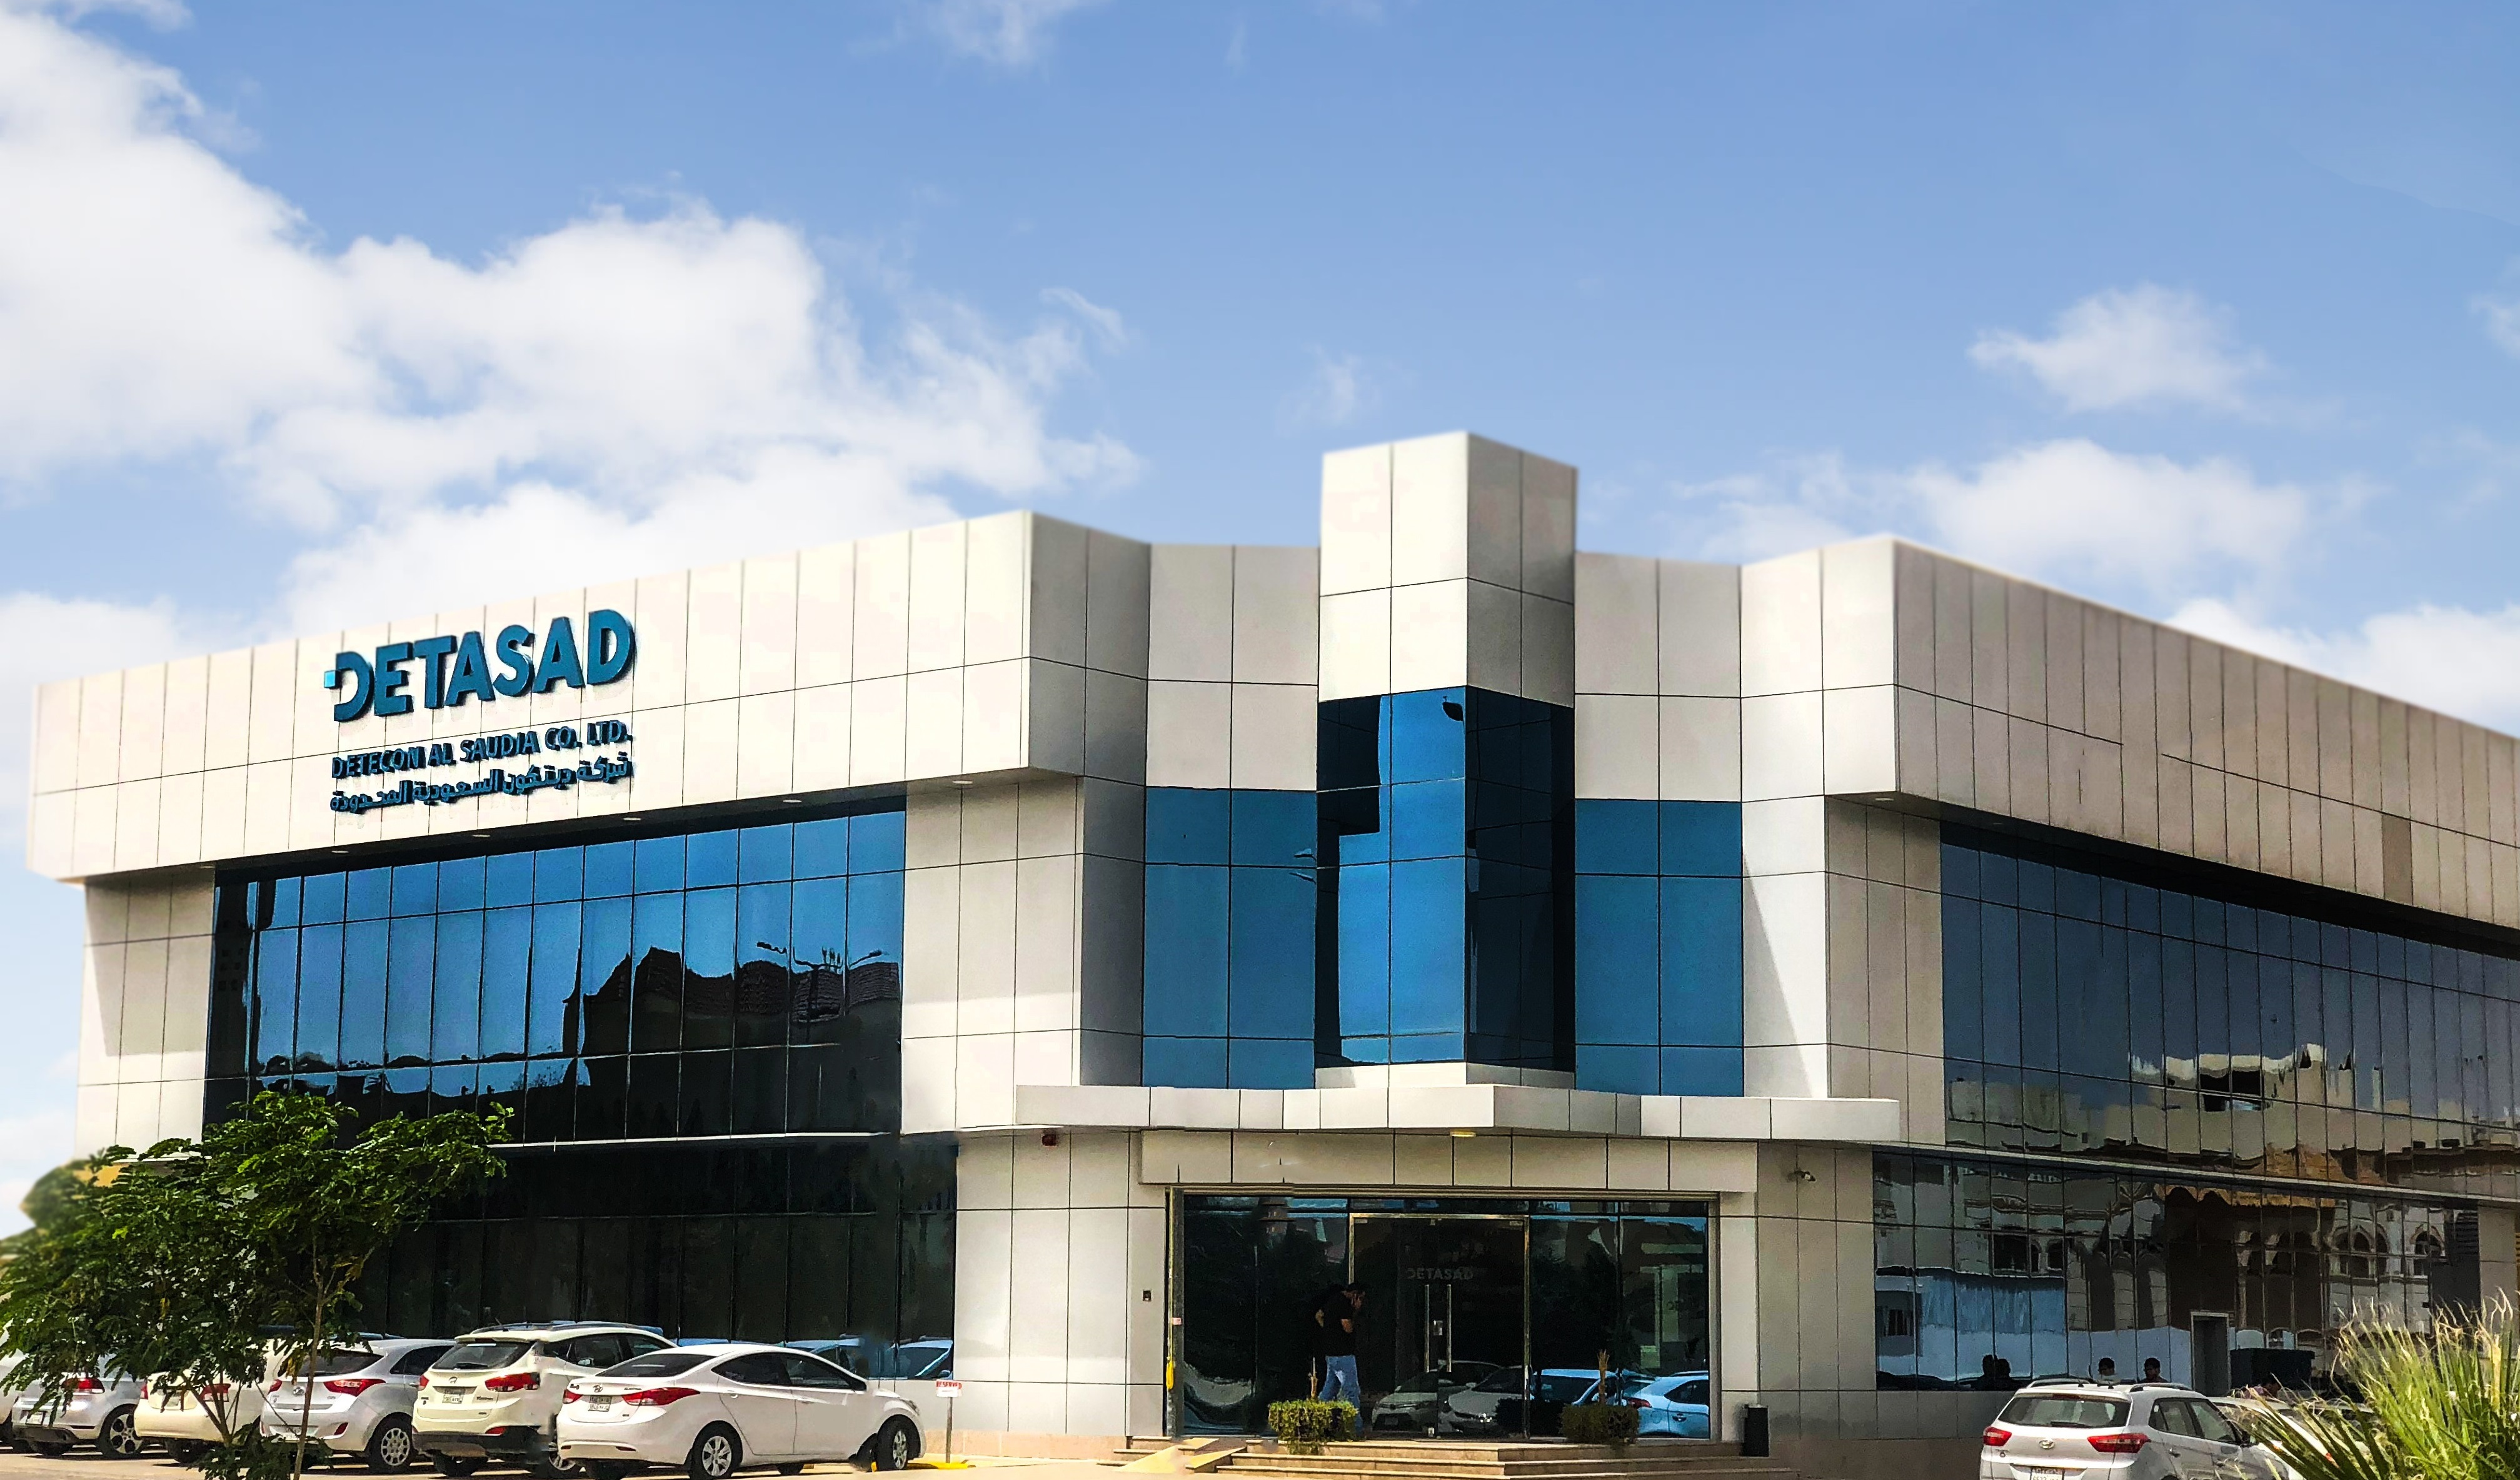 DETASAD (Detecon Al Saudia Co. Ltd.).